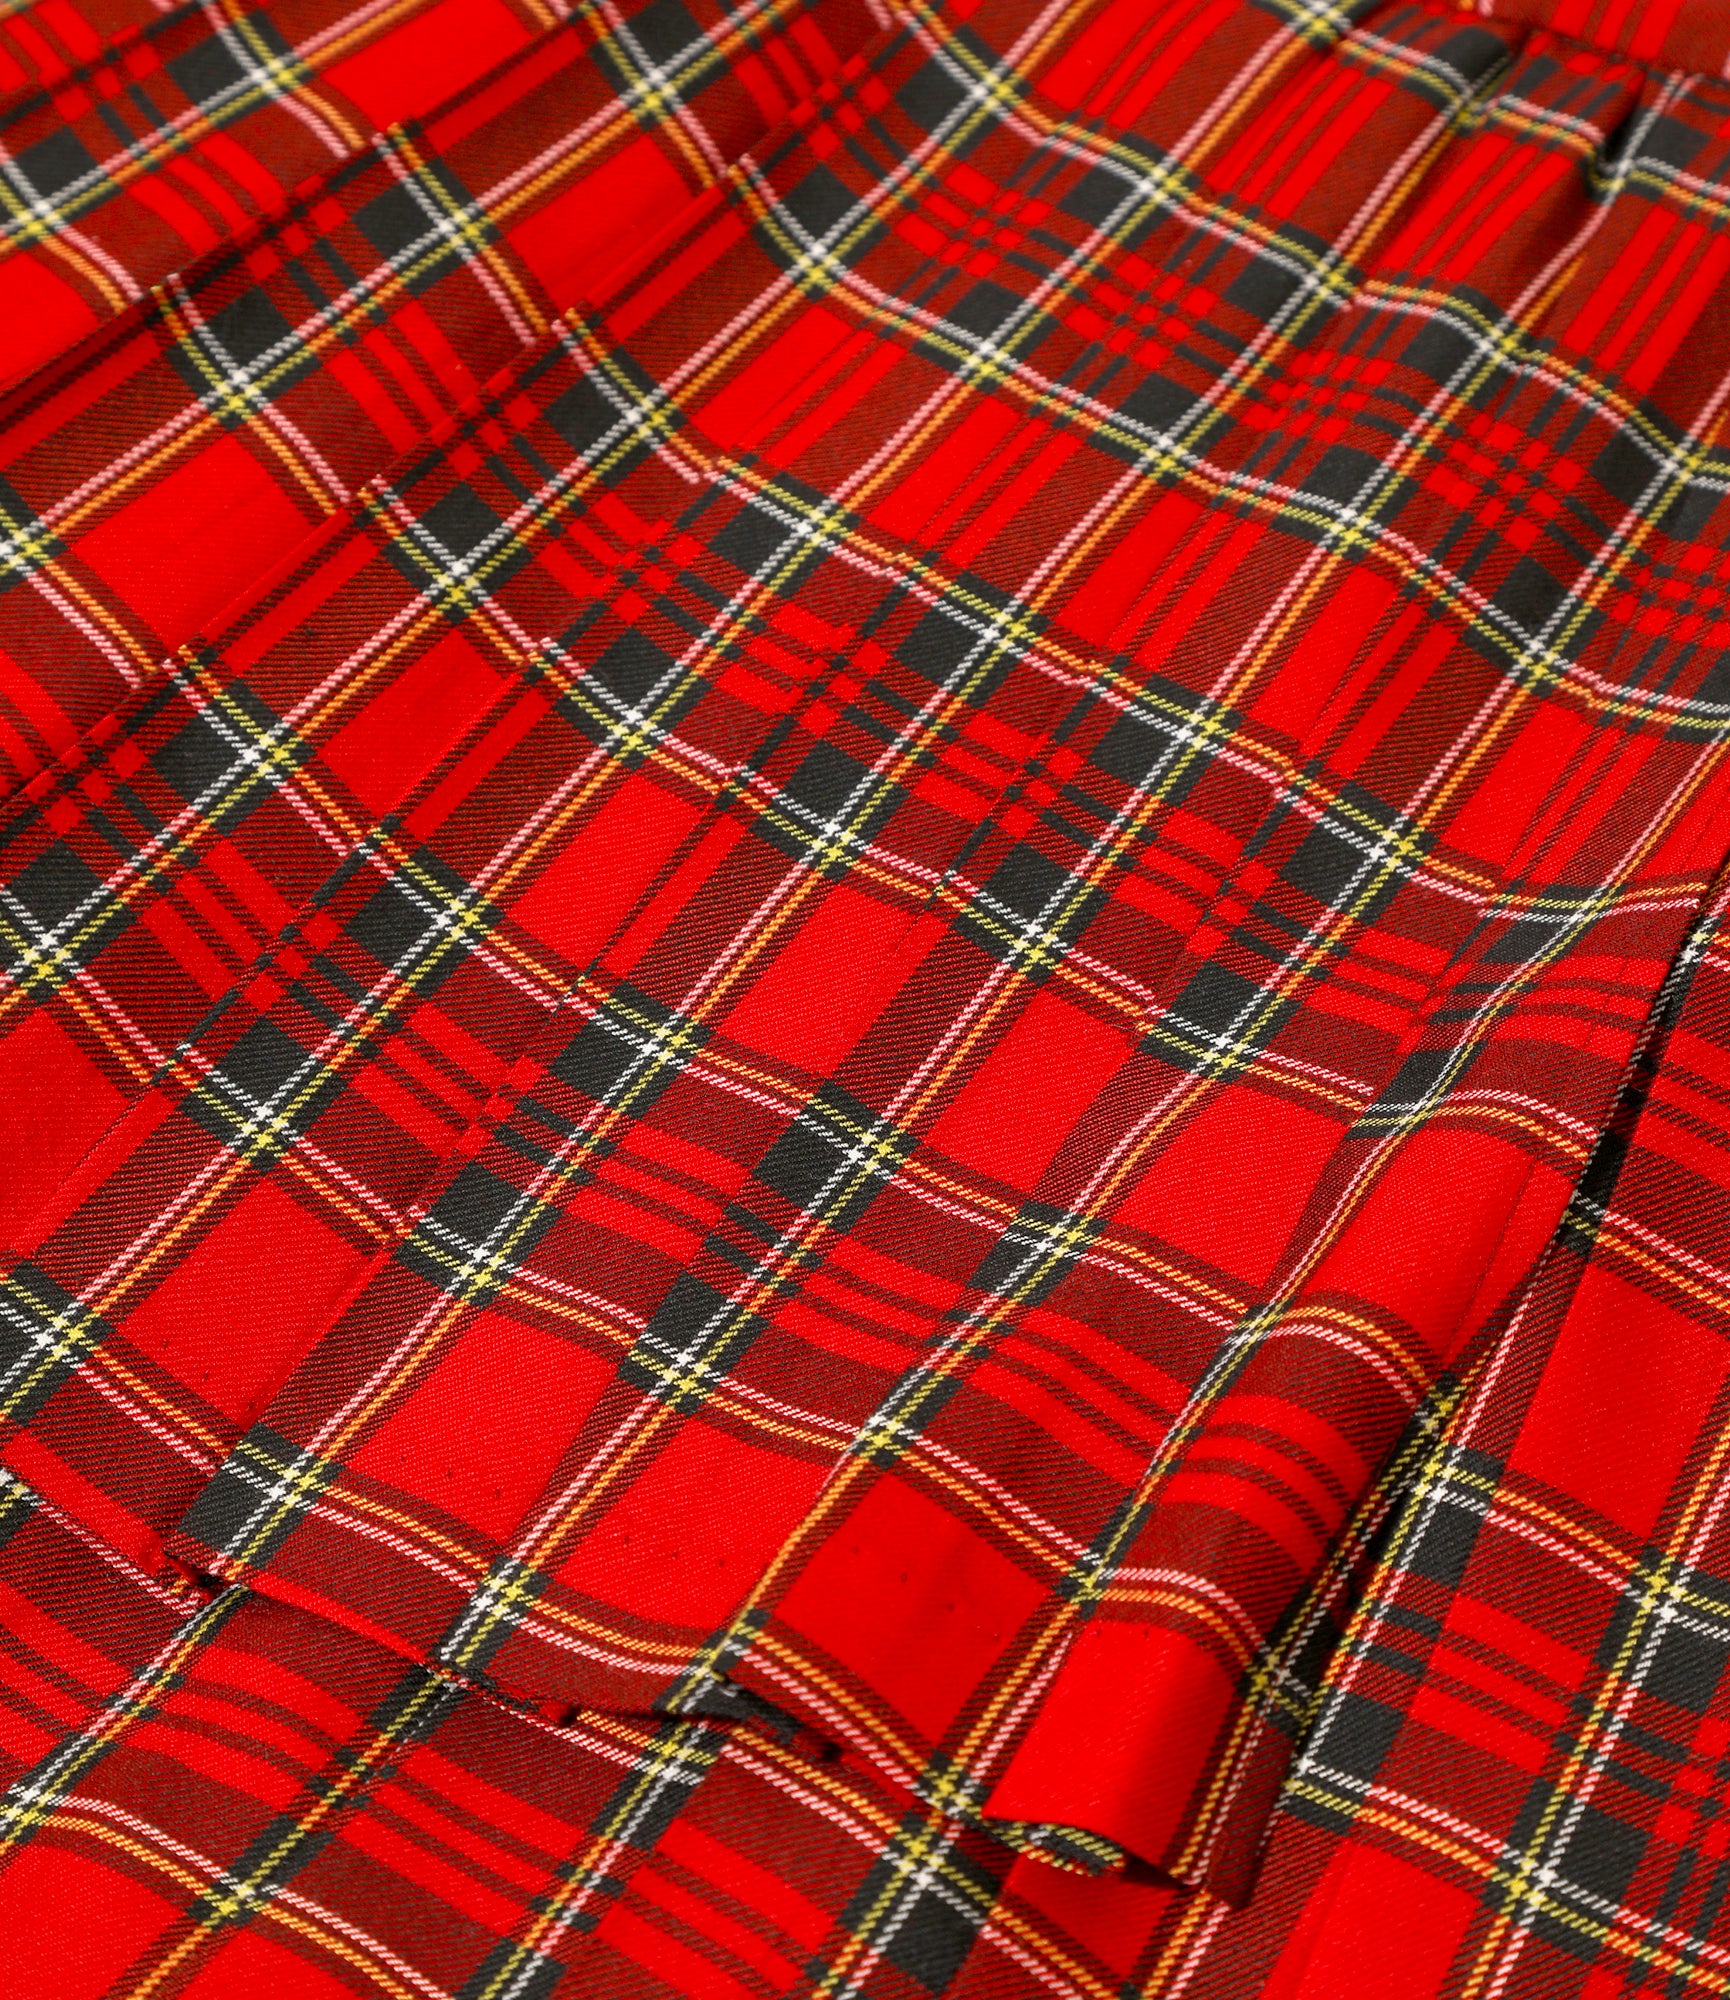 Variation Pleats Skirt - Tartan - Red